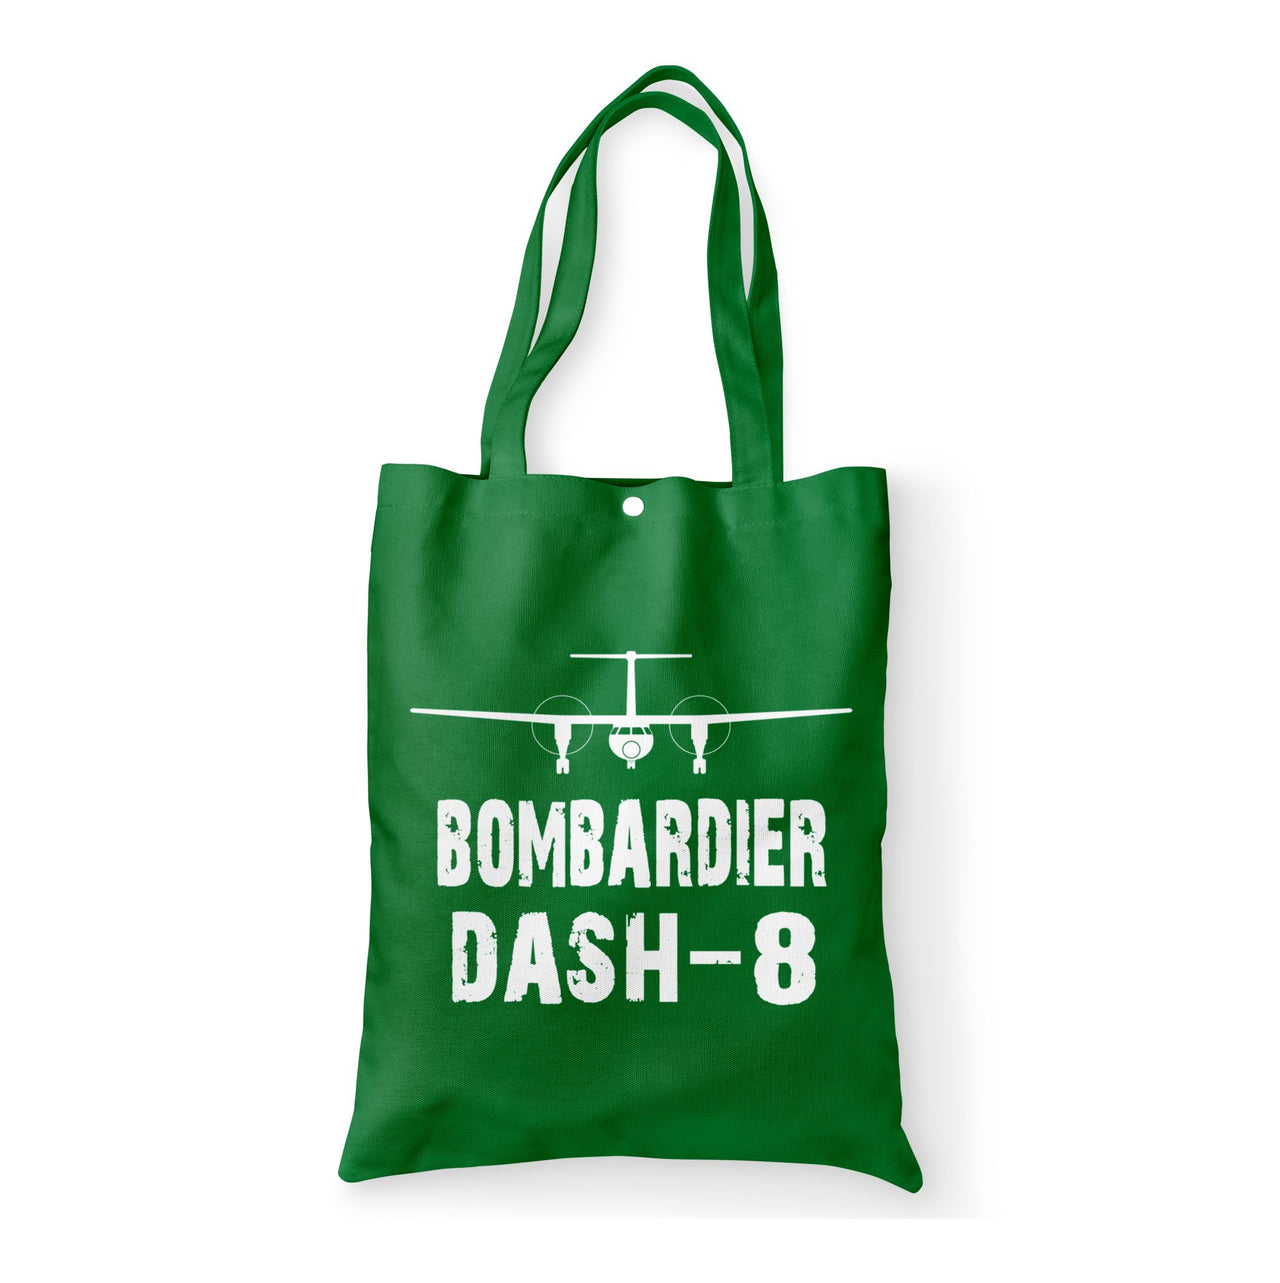 Bombardier Dash-8 & Plane Designed Tote Bags